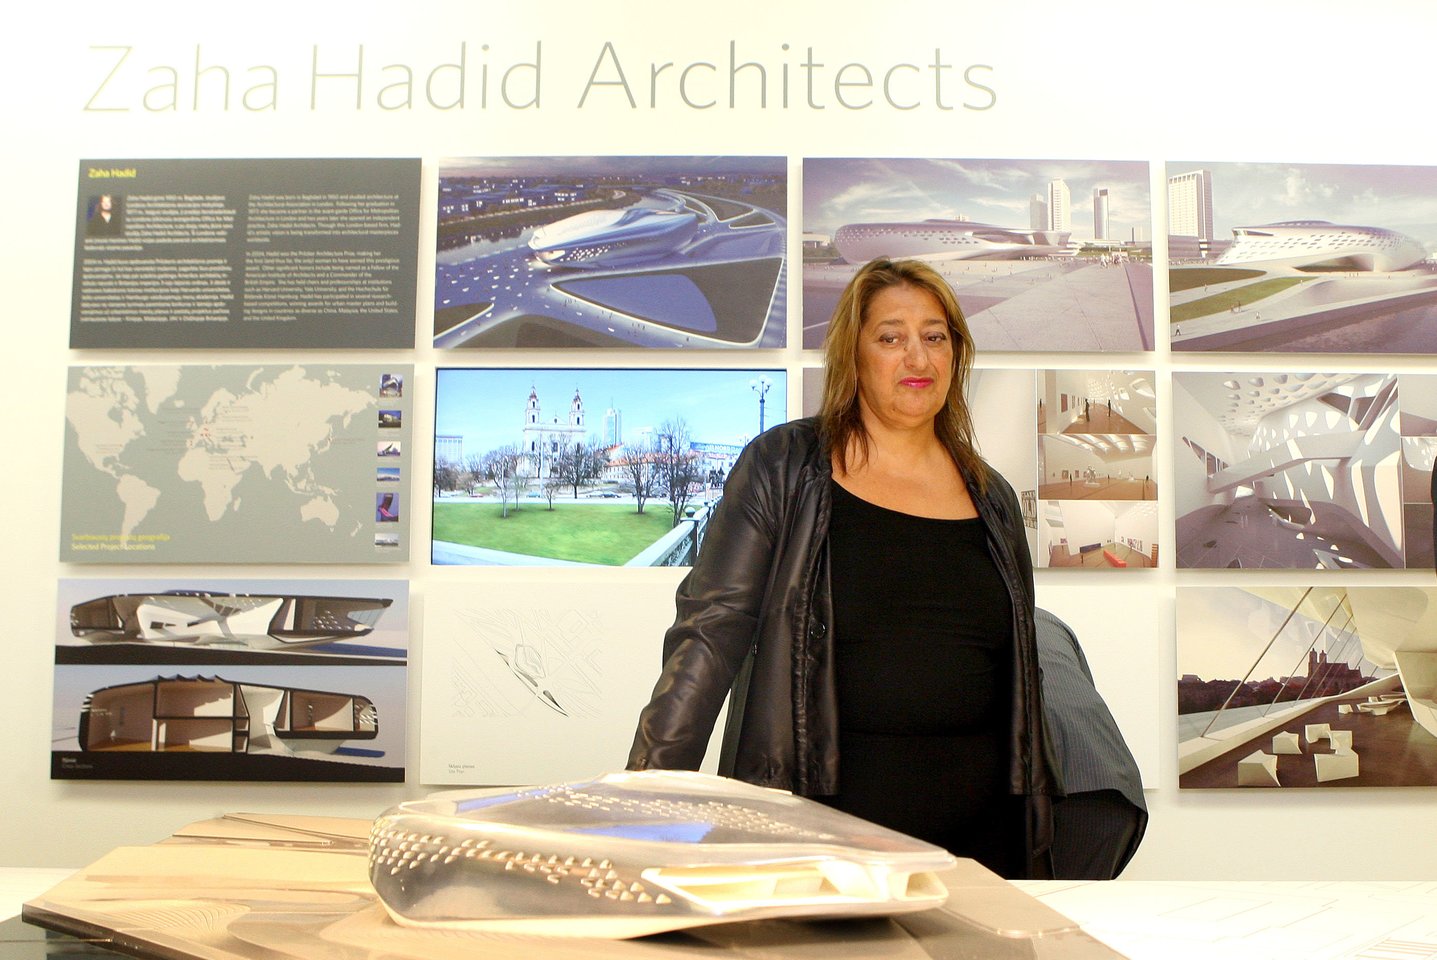 2016 m. mirė viena žymiausių XX a. architekčių Zaha Hadid (65 m.). Jos projektuotiems statiniams būdinga novatoriškos, dinamiškos, laužytos formos.<br>LR nuotr.